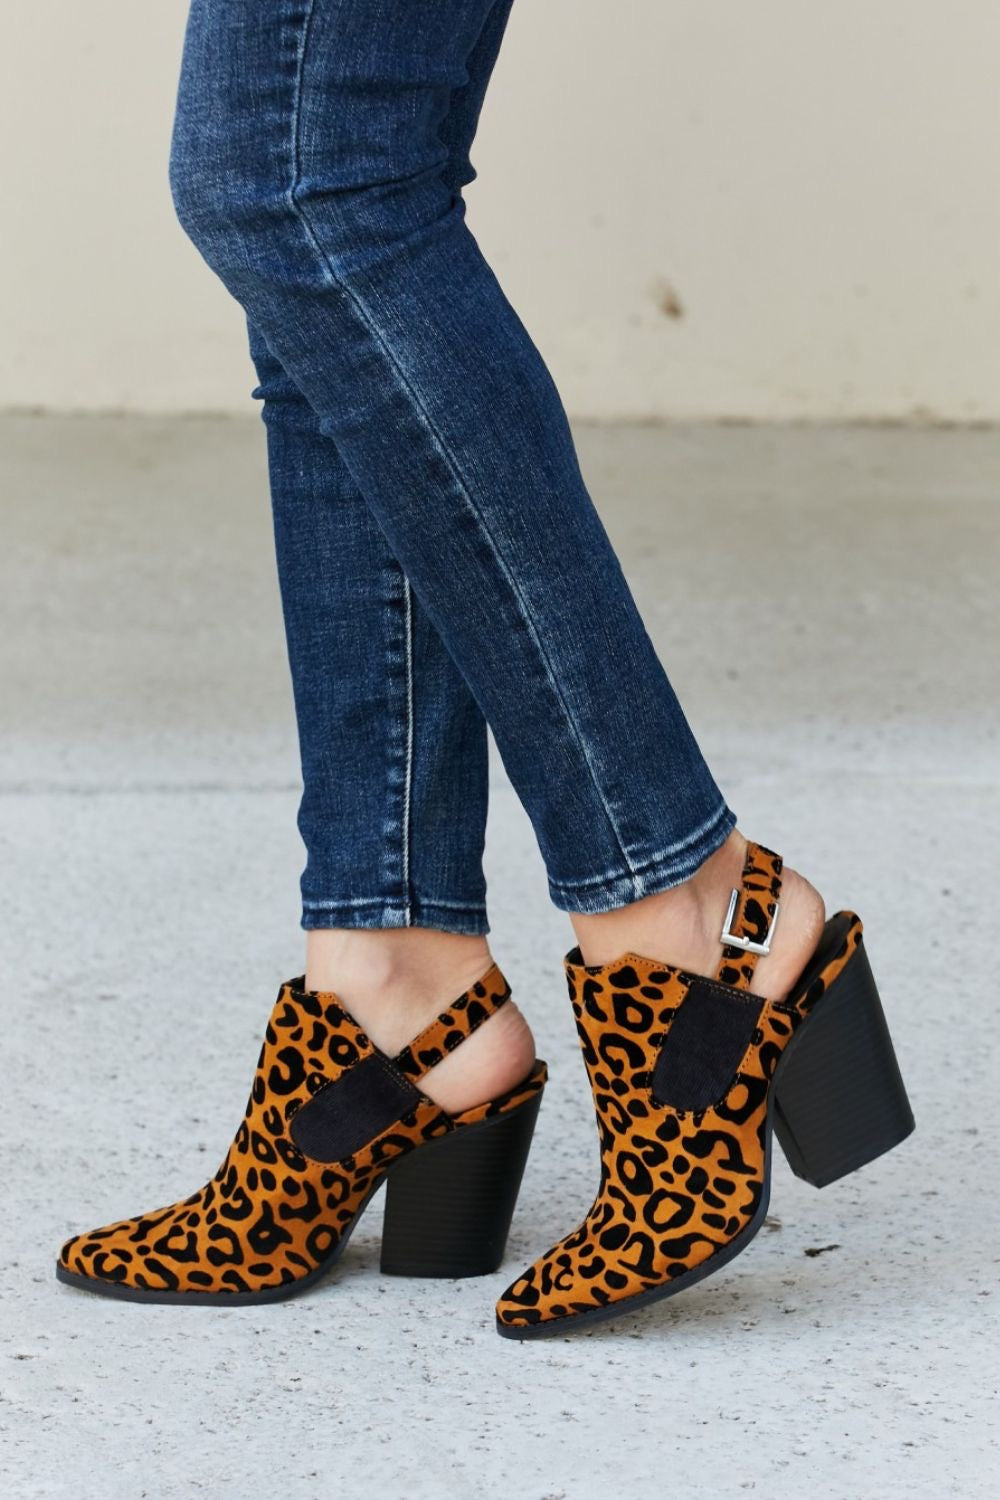 Leopard booties